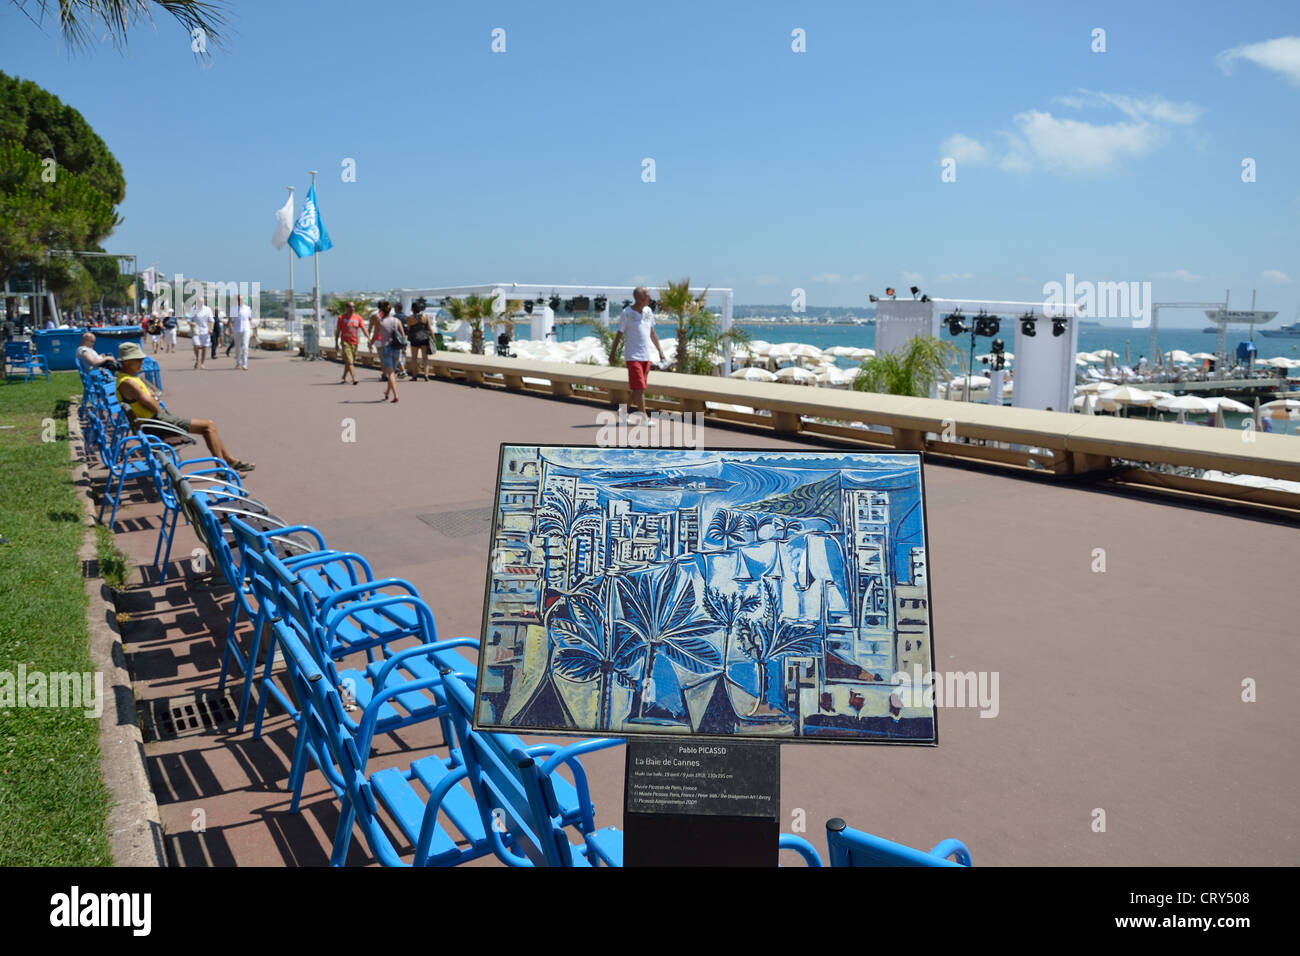 Beach promenade, Boulevard de la Croisette, Cannes, Côte d'Azur, Alpes-Maritimes, Provence-Alpes-Côte d'Azur, France Stock Photo